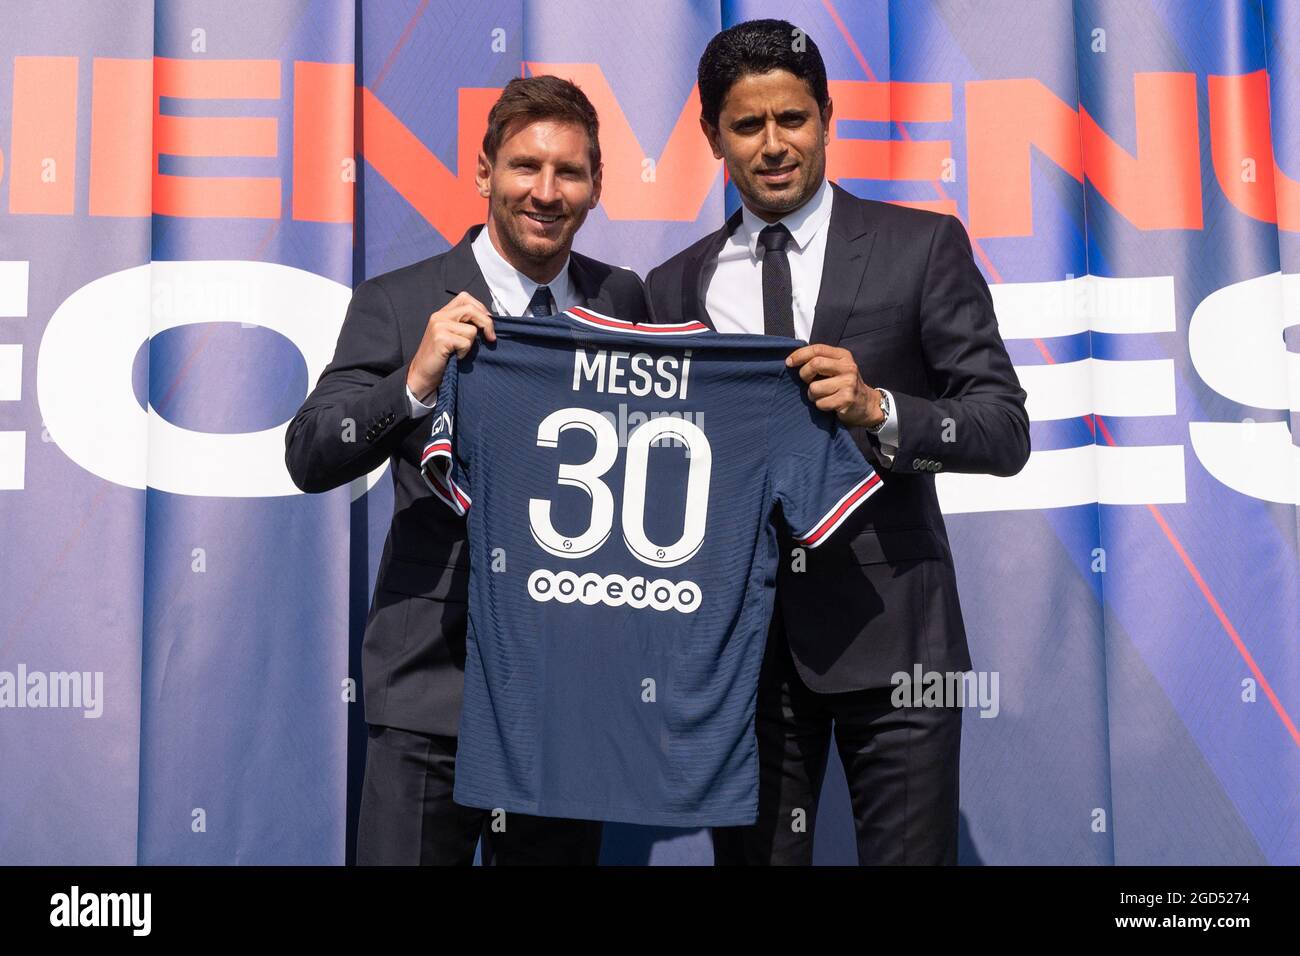 Nasser Al-Khelaifi, président qatari de Paris Saint-Germain, pose aux côtés  du joueur de football argentin Lionel Messi, alors qu'il tient son maillot  numéro 30 lors d'une conférence de presse au club de